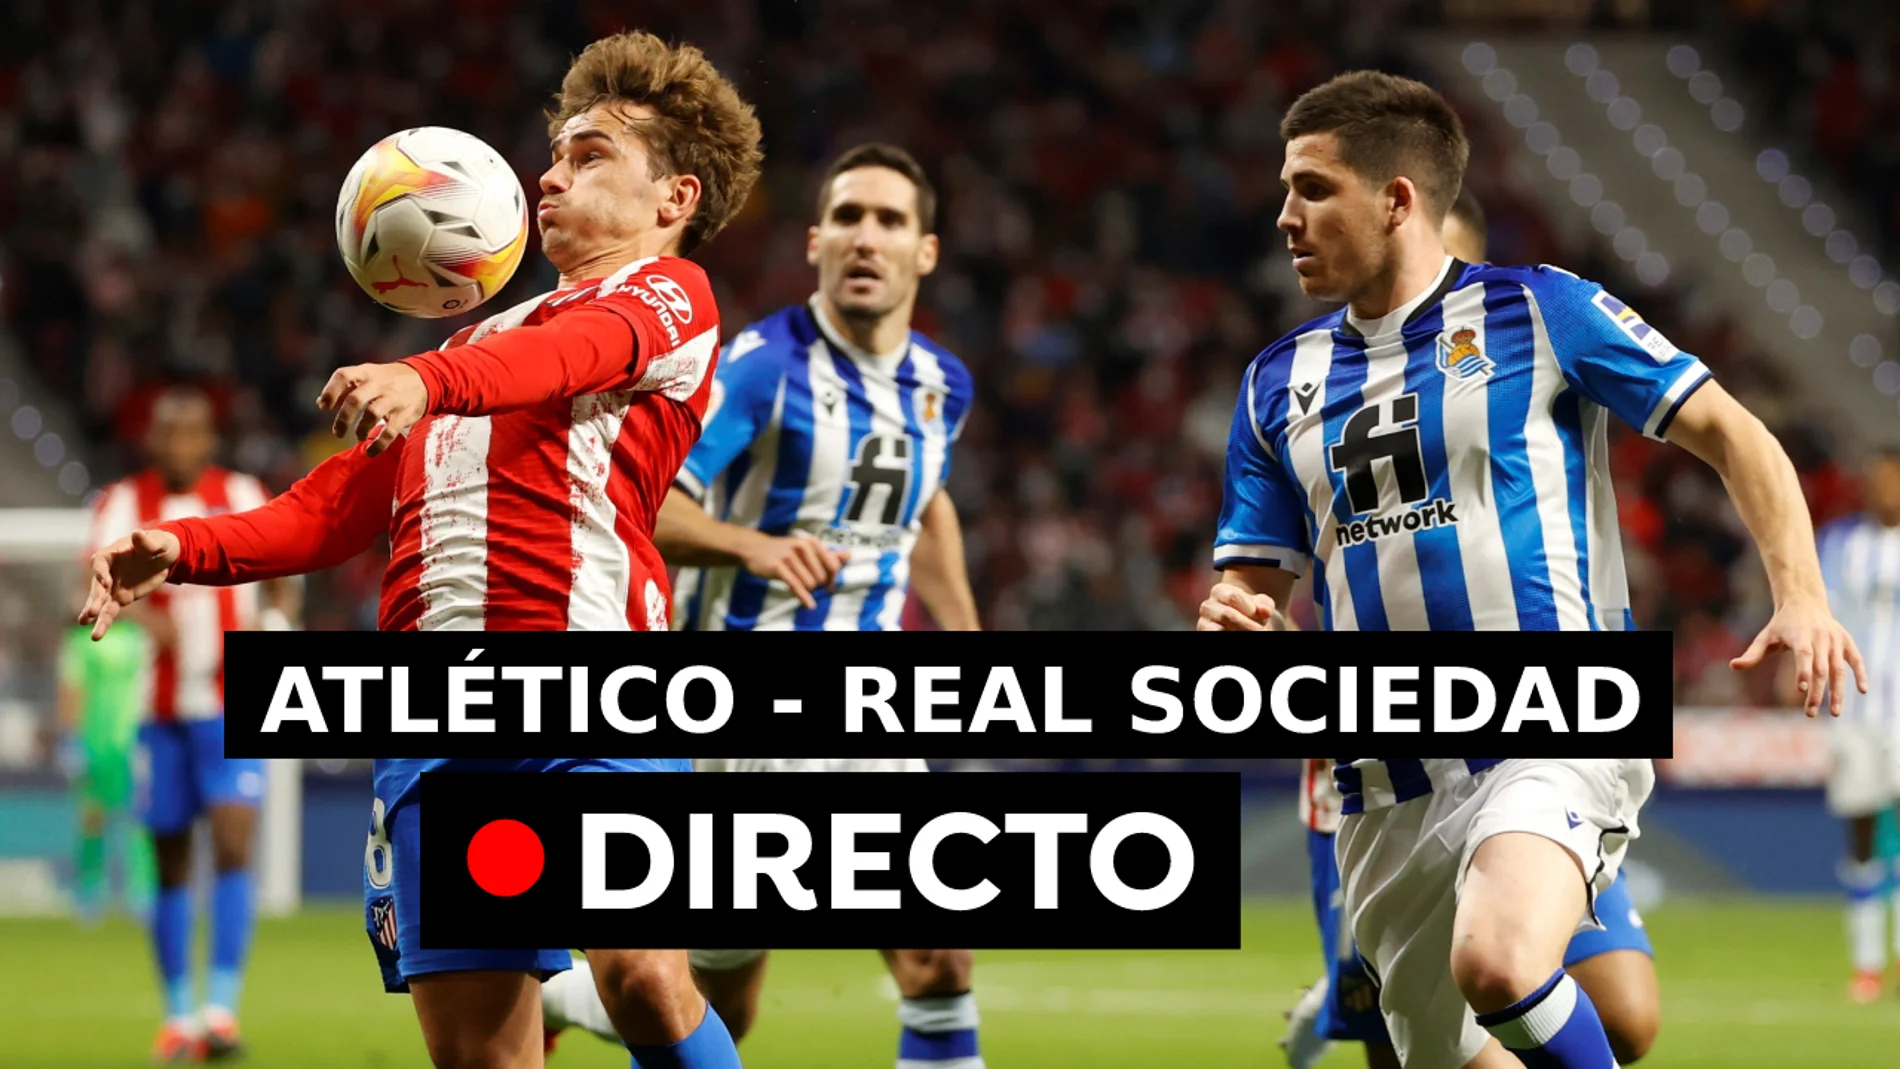 Atlético de Madrid - Real Sociedad: Resultado, en directo